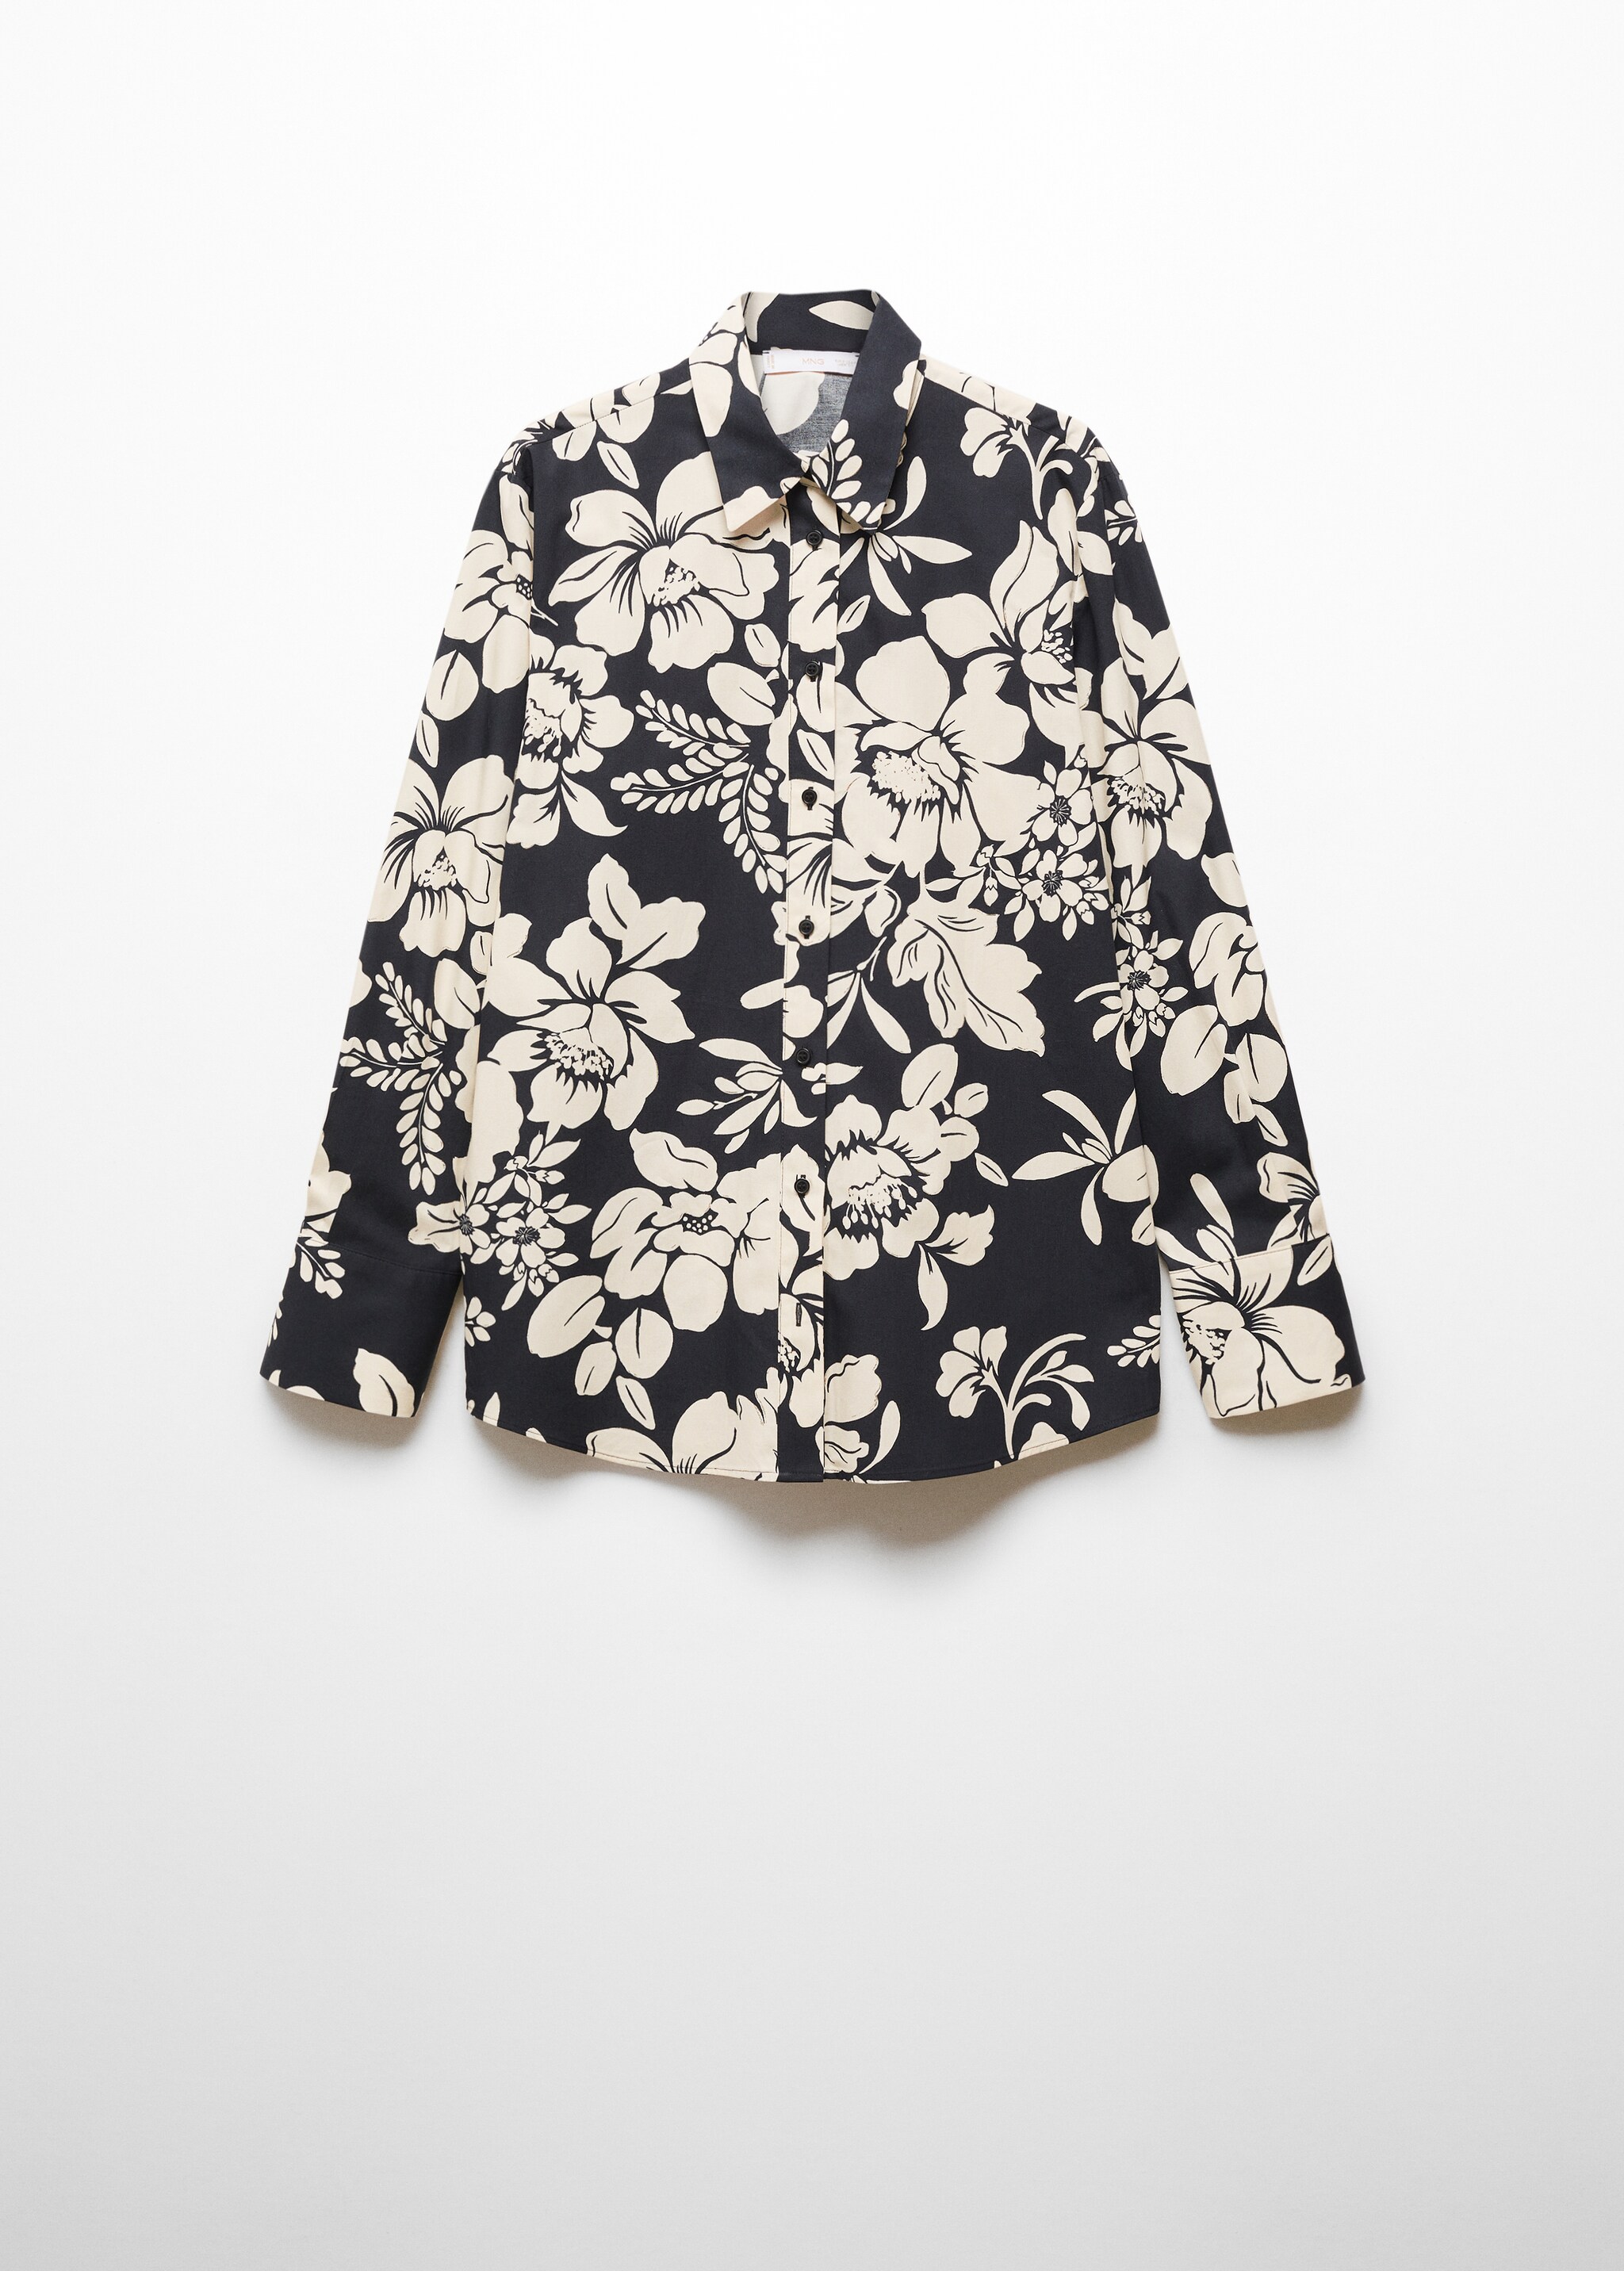 Camisa 100% algodón estampado flores - Artículo sin modelo